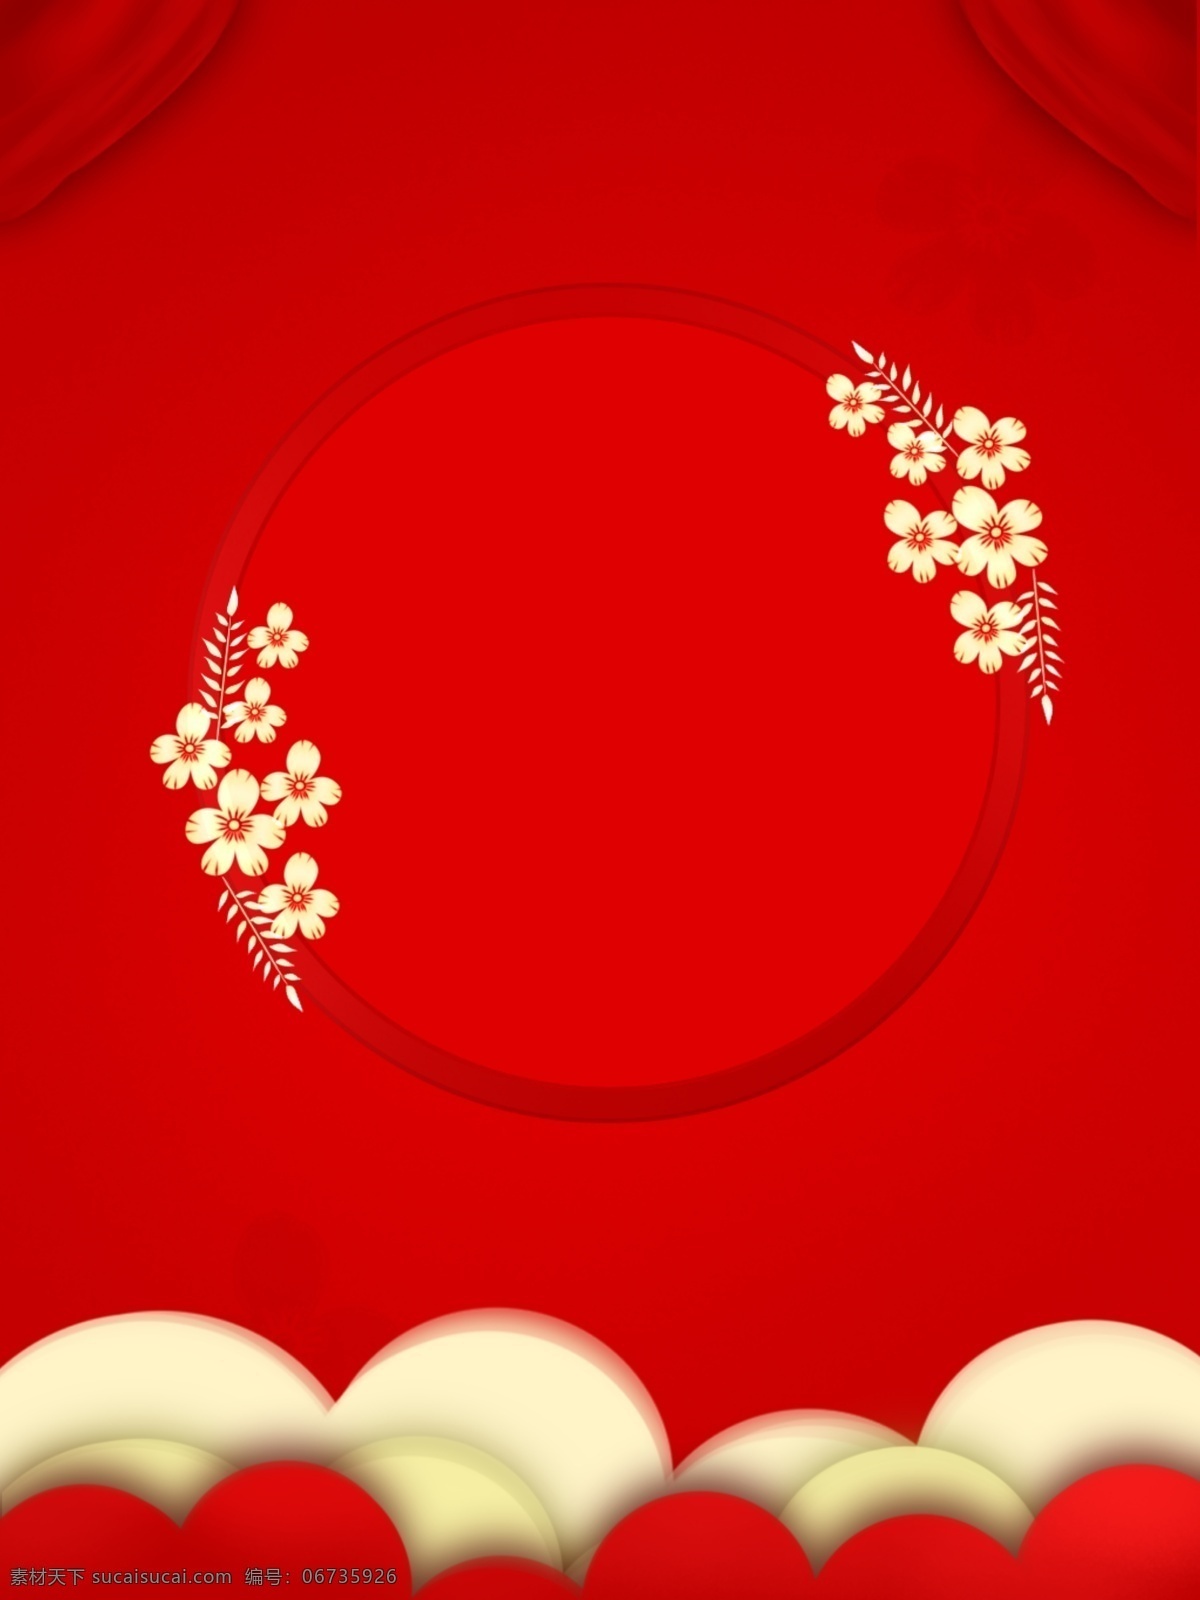 红色 春节 喜庆 年货 节 背景图片 年货节 背景 背景素材 底纹边框 背景底纹